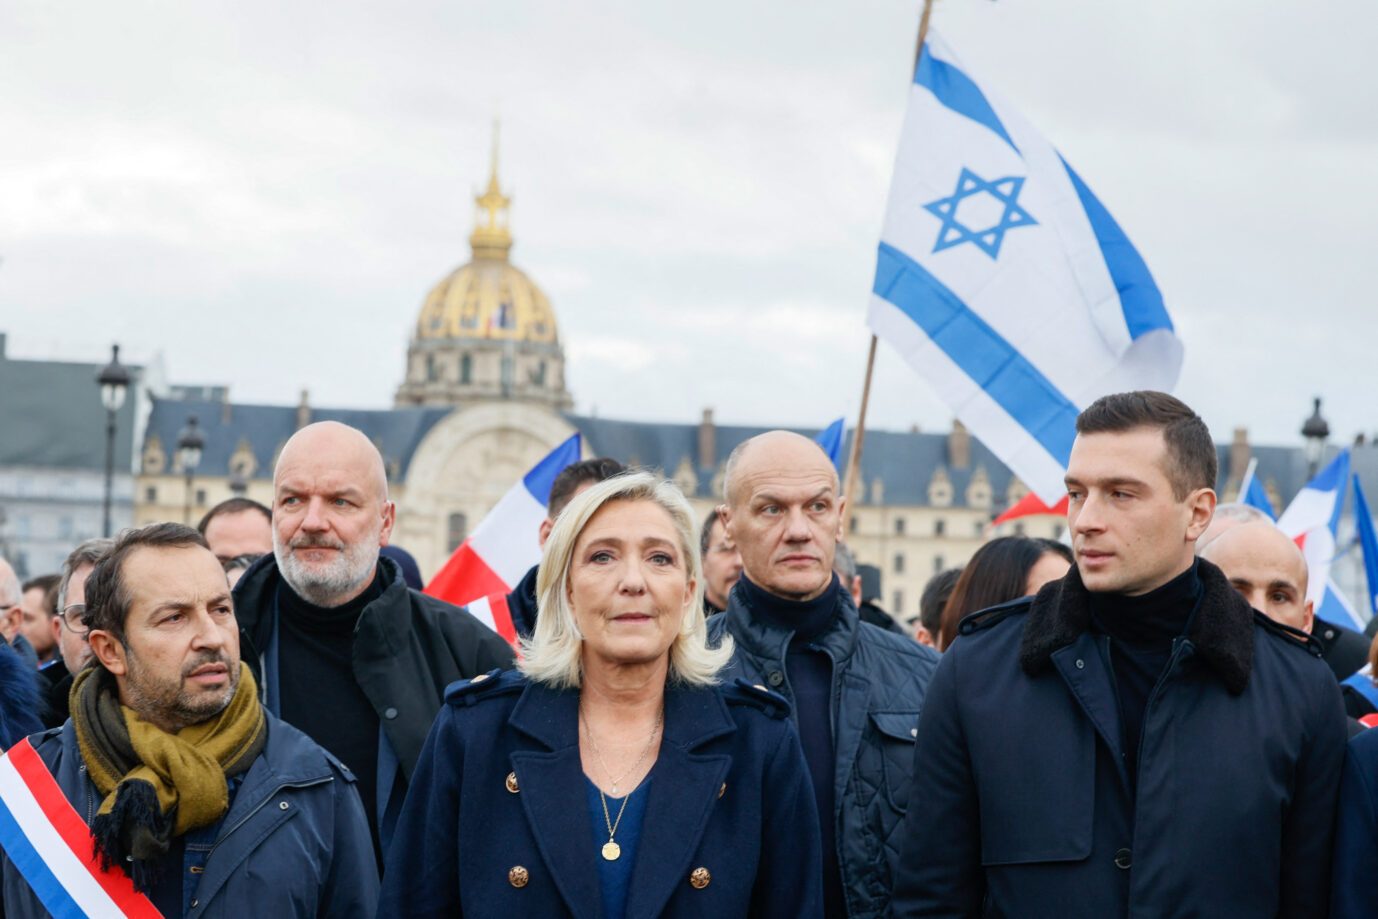 Rassemblement-National-Poliltikerin Marine Le Pen (Mitte) auf dem Marsch gegen Antisemitismus in Frankreich: Geschickte Strategie bürgerliche Wähler anzusprechen.